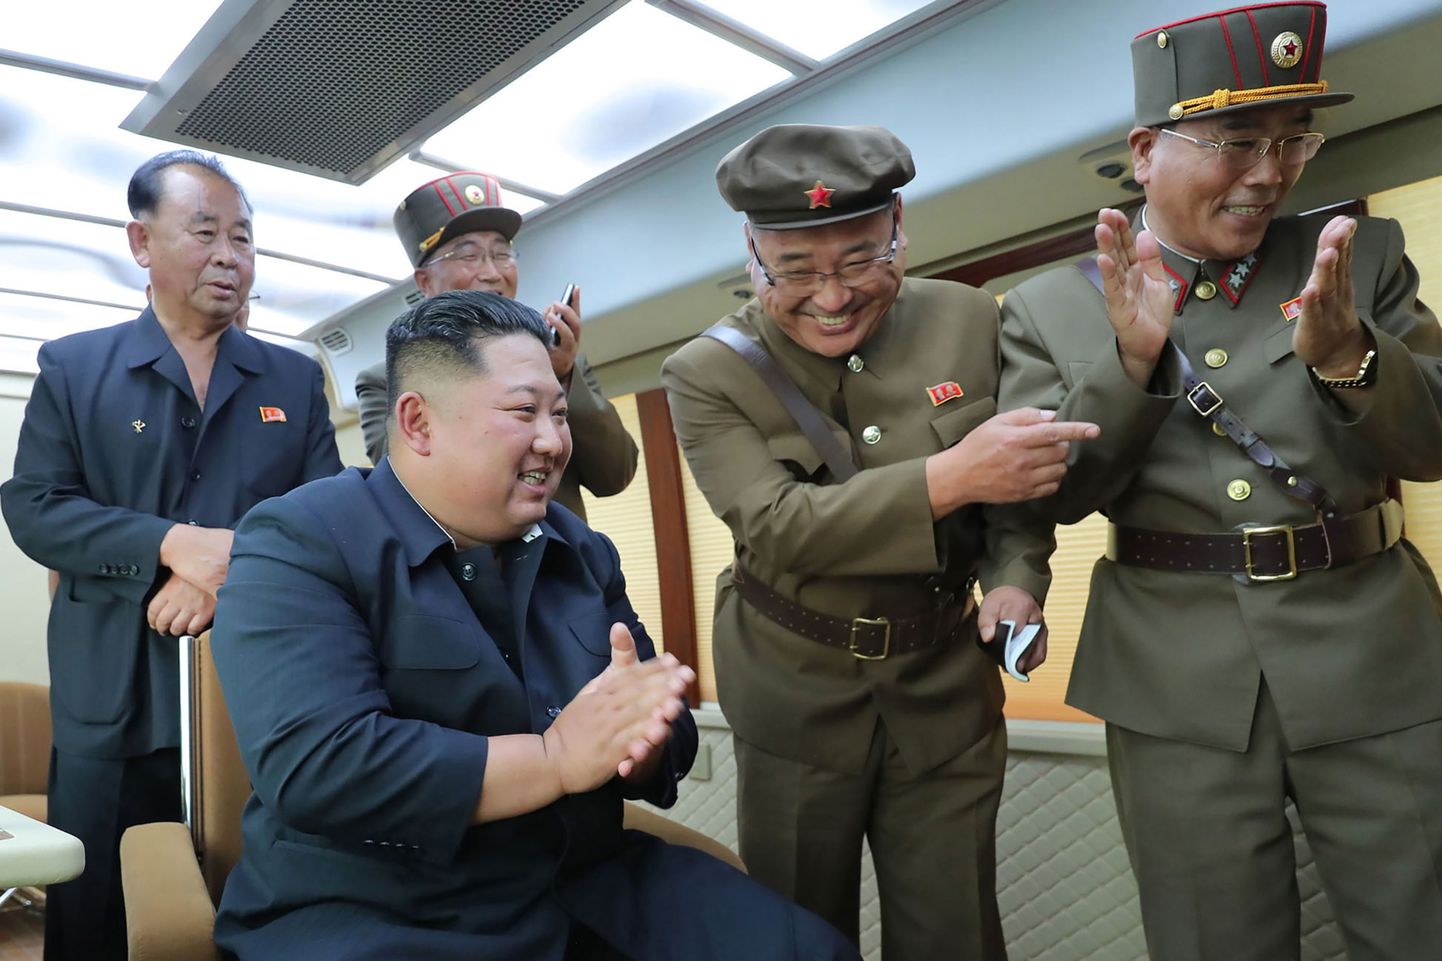 Põhja-Korea liider Kim Jong-un (esiplaanil) rõõmustamas reedel eduka relvakatsetuse üle. Foto avaldas päev hiljem Põhja-Korea riiklik uudisteagentuur KCNA.